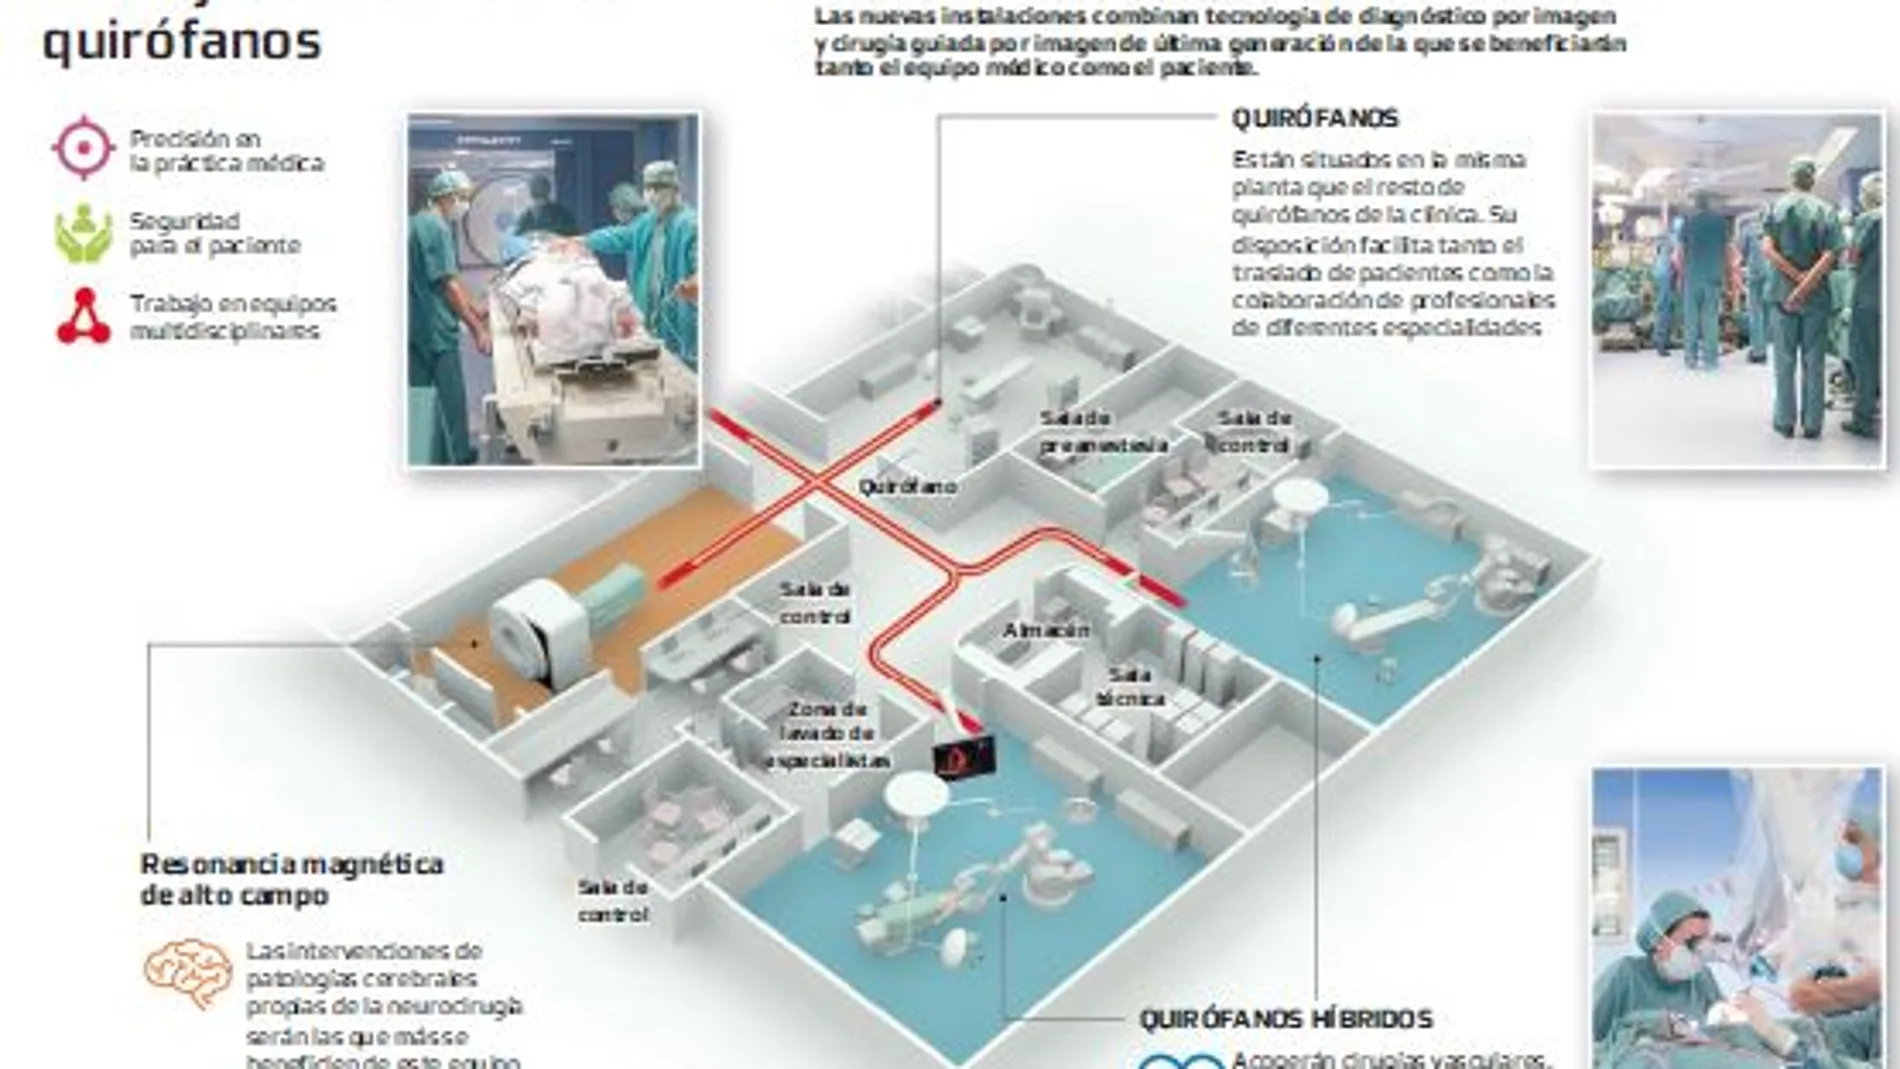 Quirófano 2.0: El primer complejo quirúrgico guiado por imagen de Europa